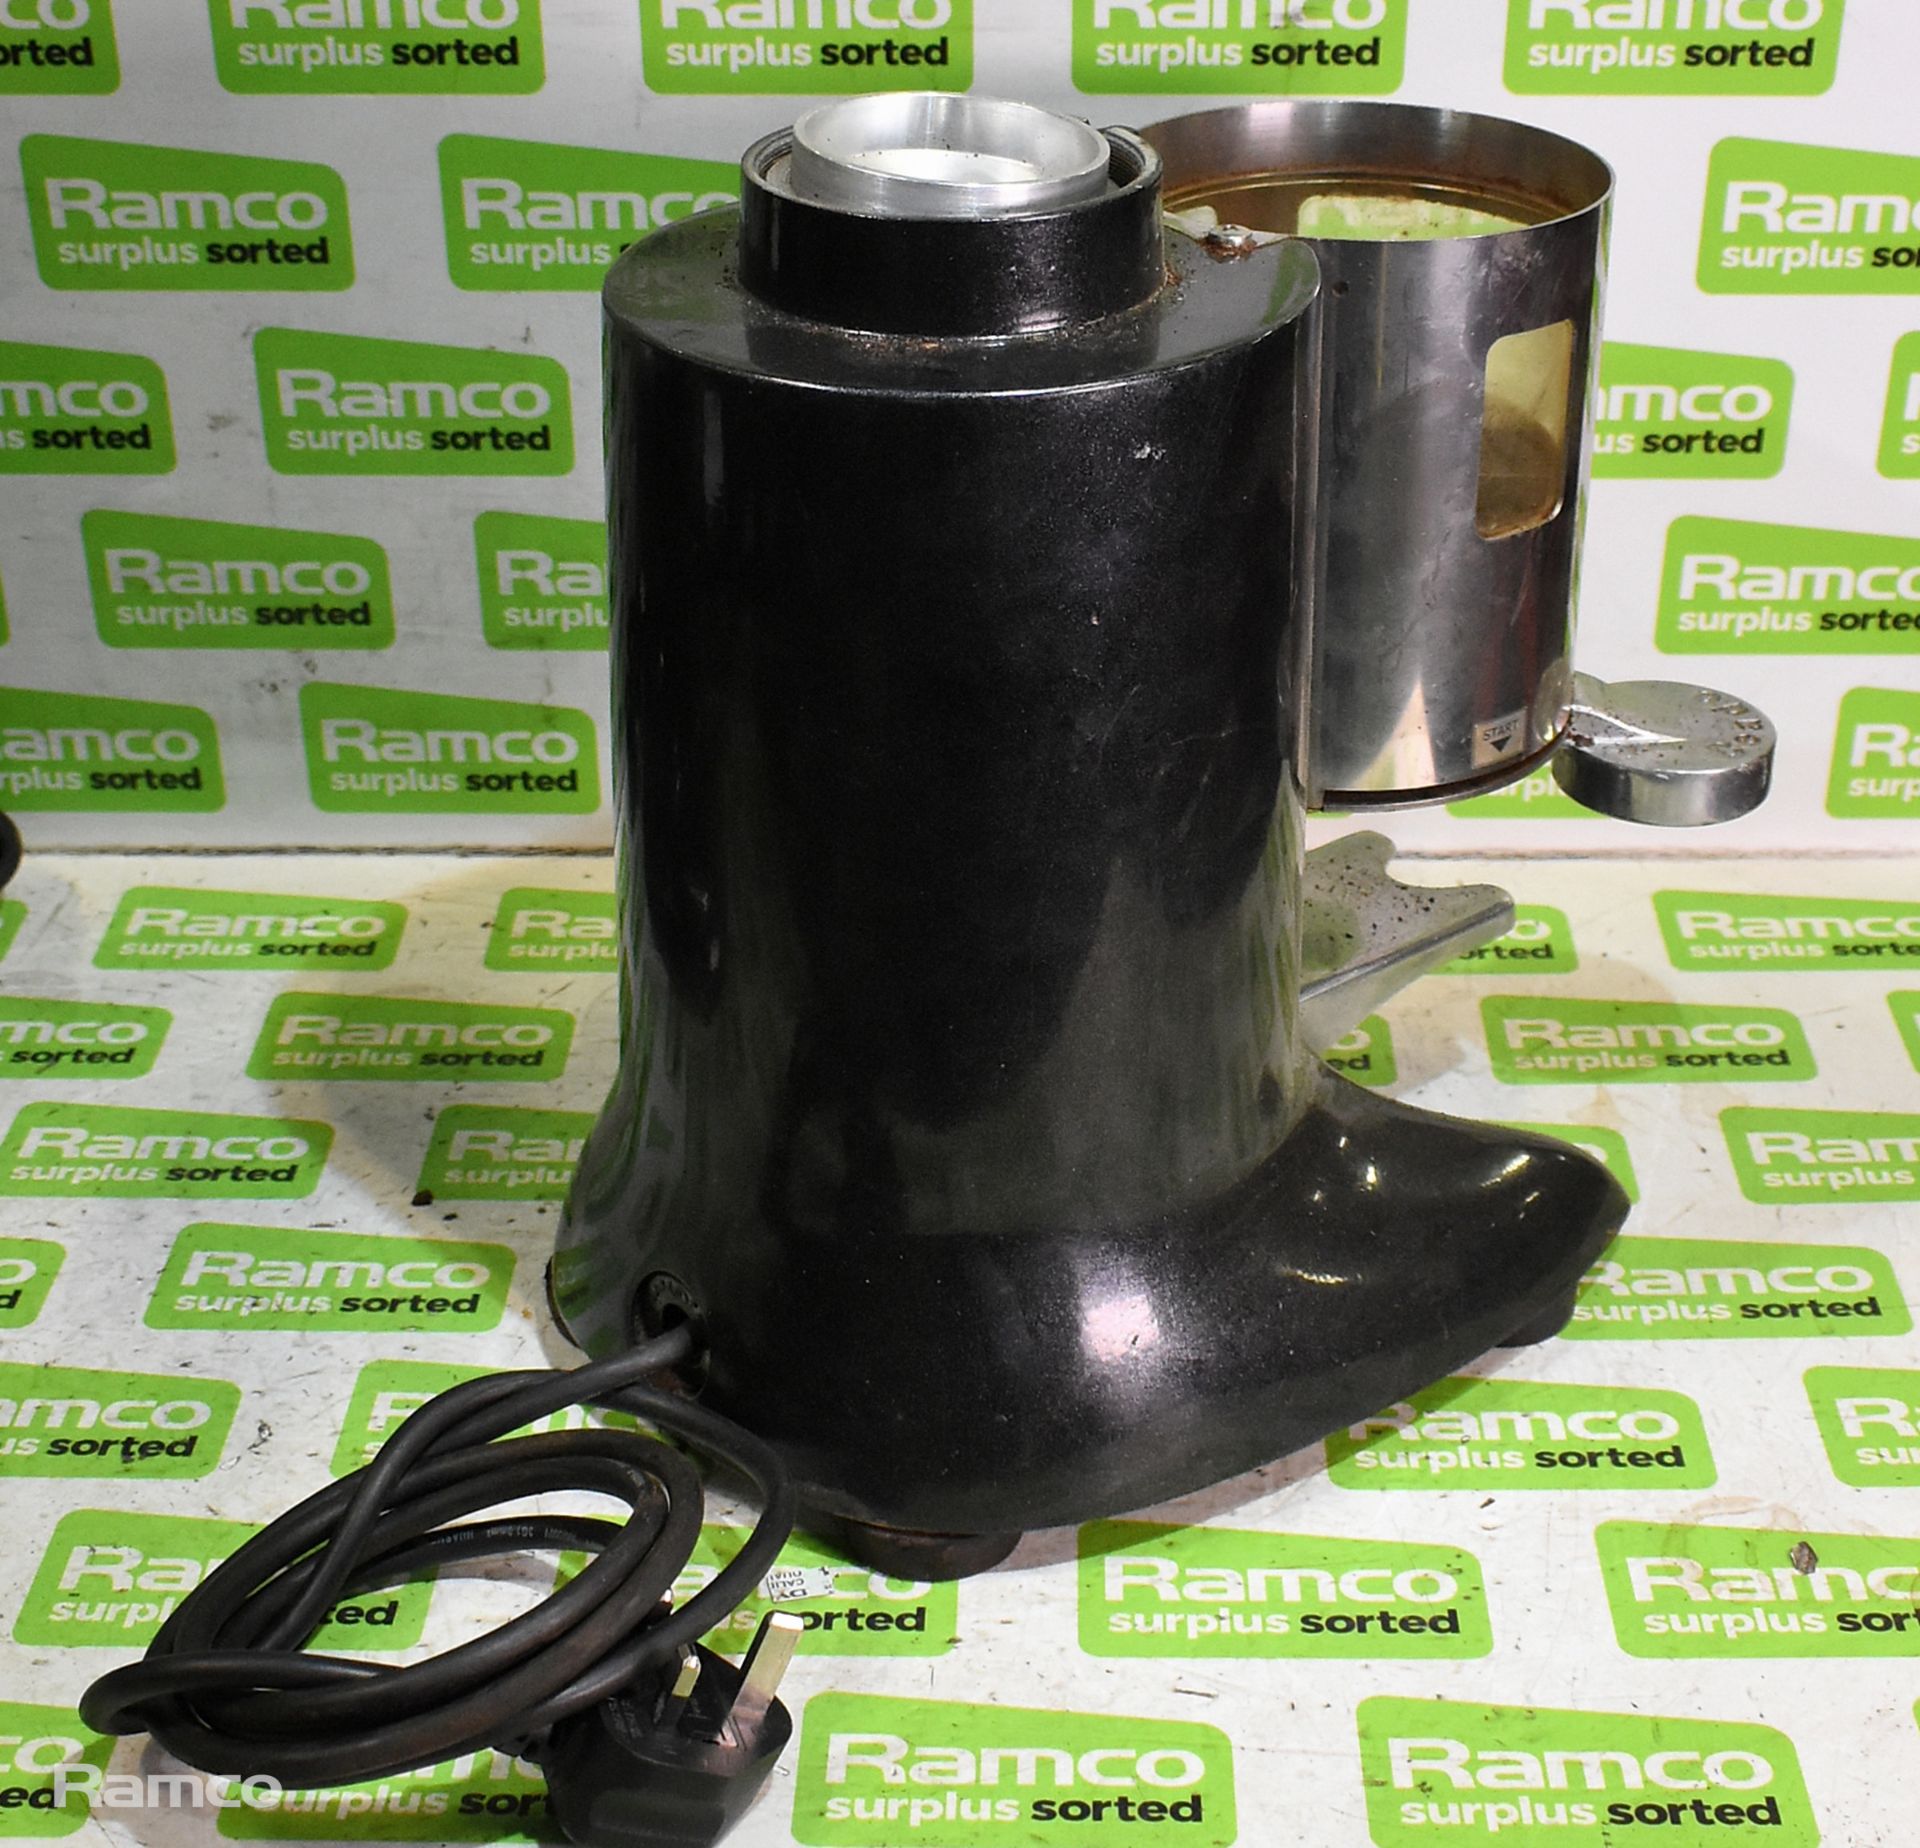 Ceado E6X espresso coffee grinder & Ceado E6X espresso coffee grinder body - Image 4 of 11